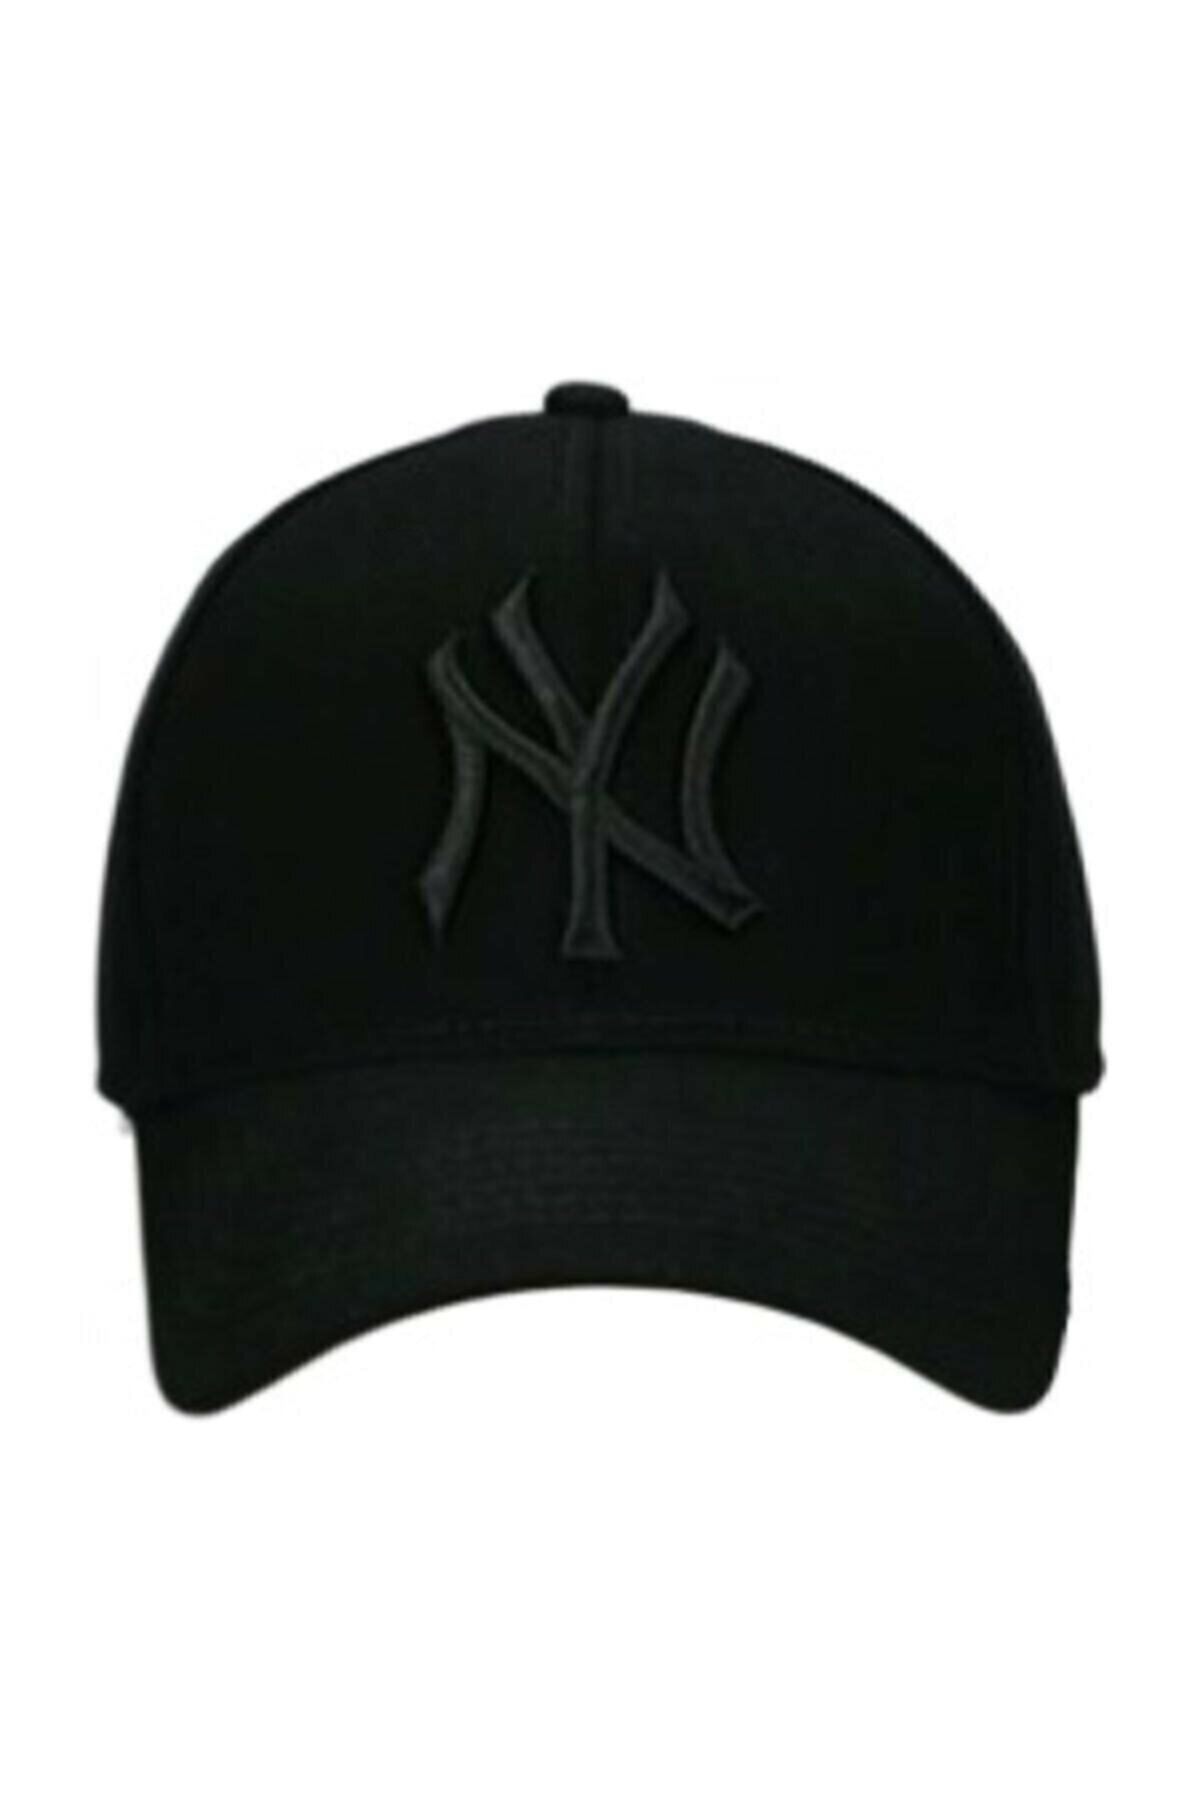 By Şapka Newyork Ayarlanabilir Yazlık Şapka Ny Siyah Arkası Cırtcırtlı Nevyork Black Cap